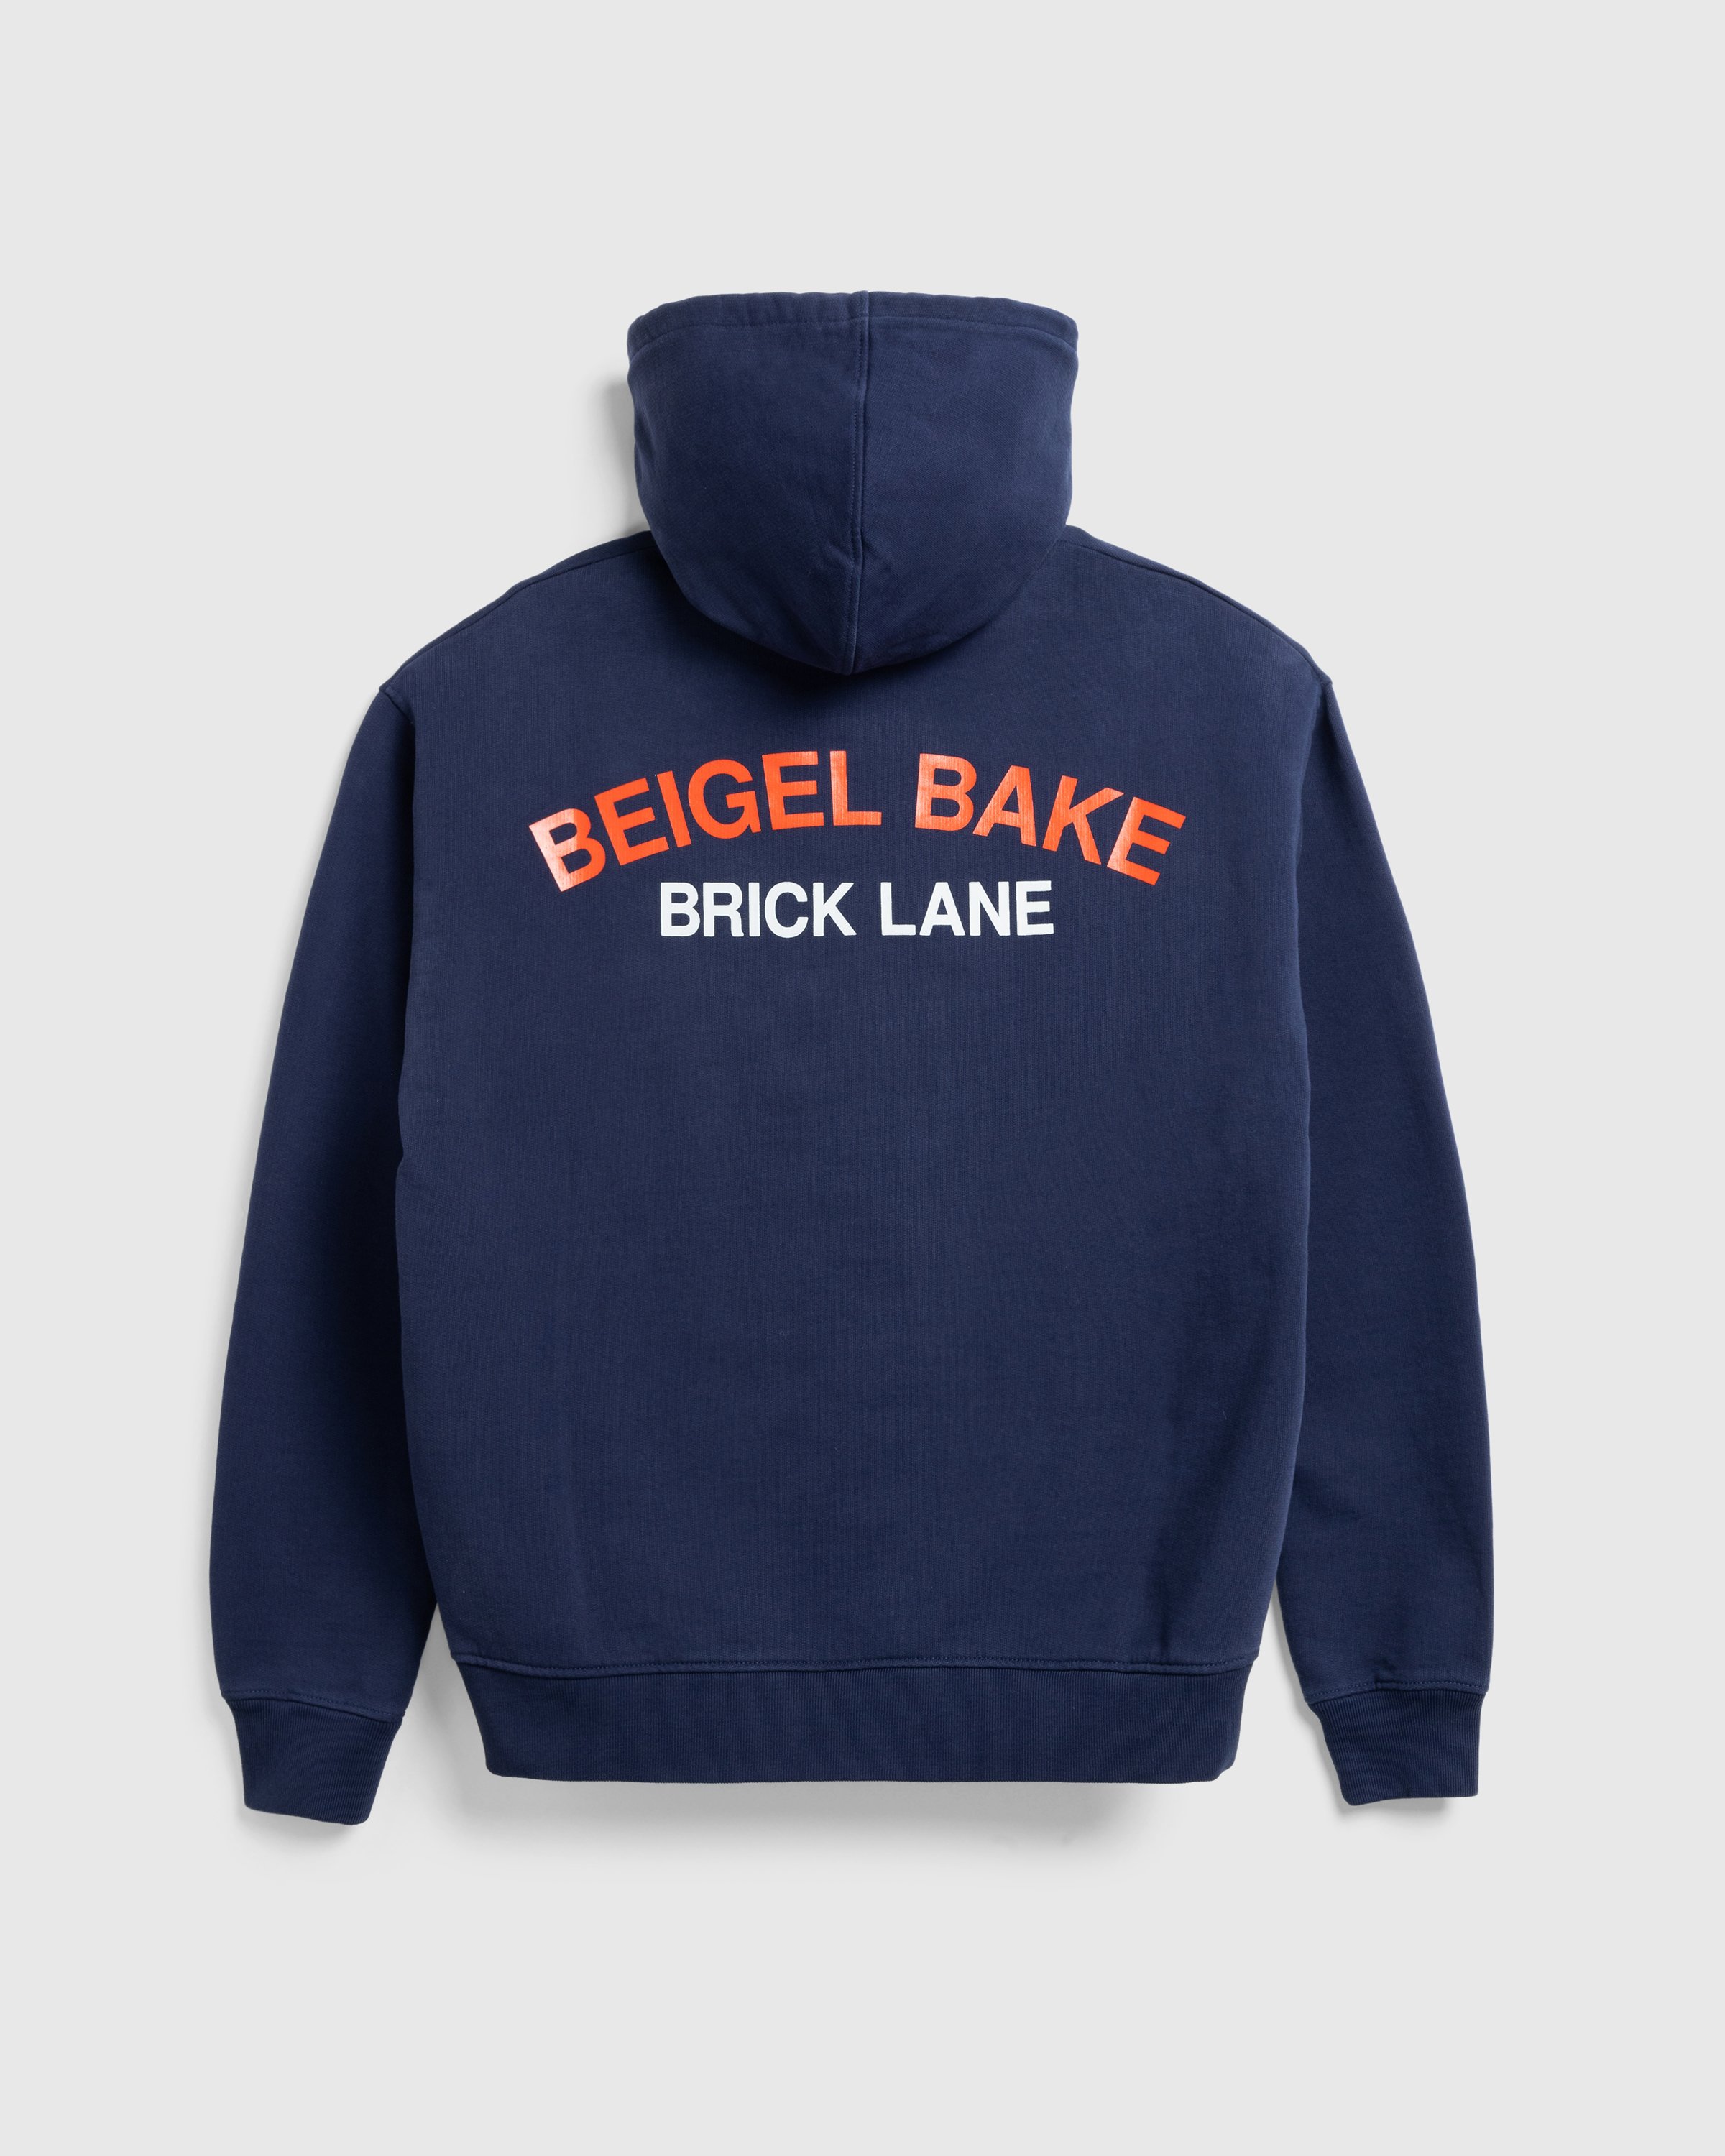 Beigel Bake x Highsnobiety - Navy Hoodie - Clothing -  - Image 1